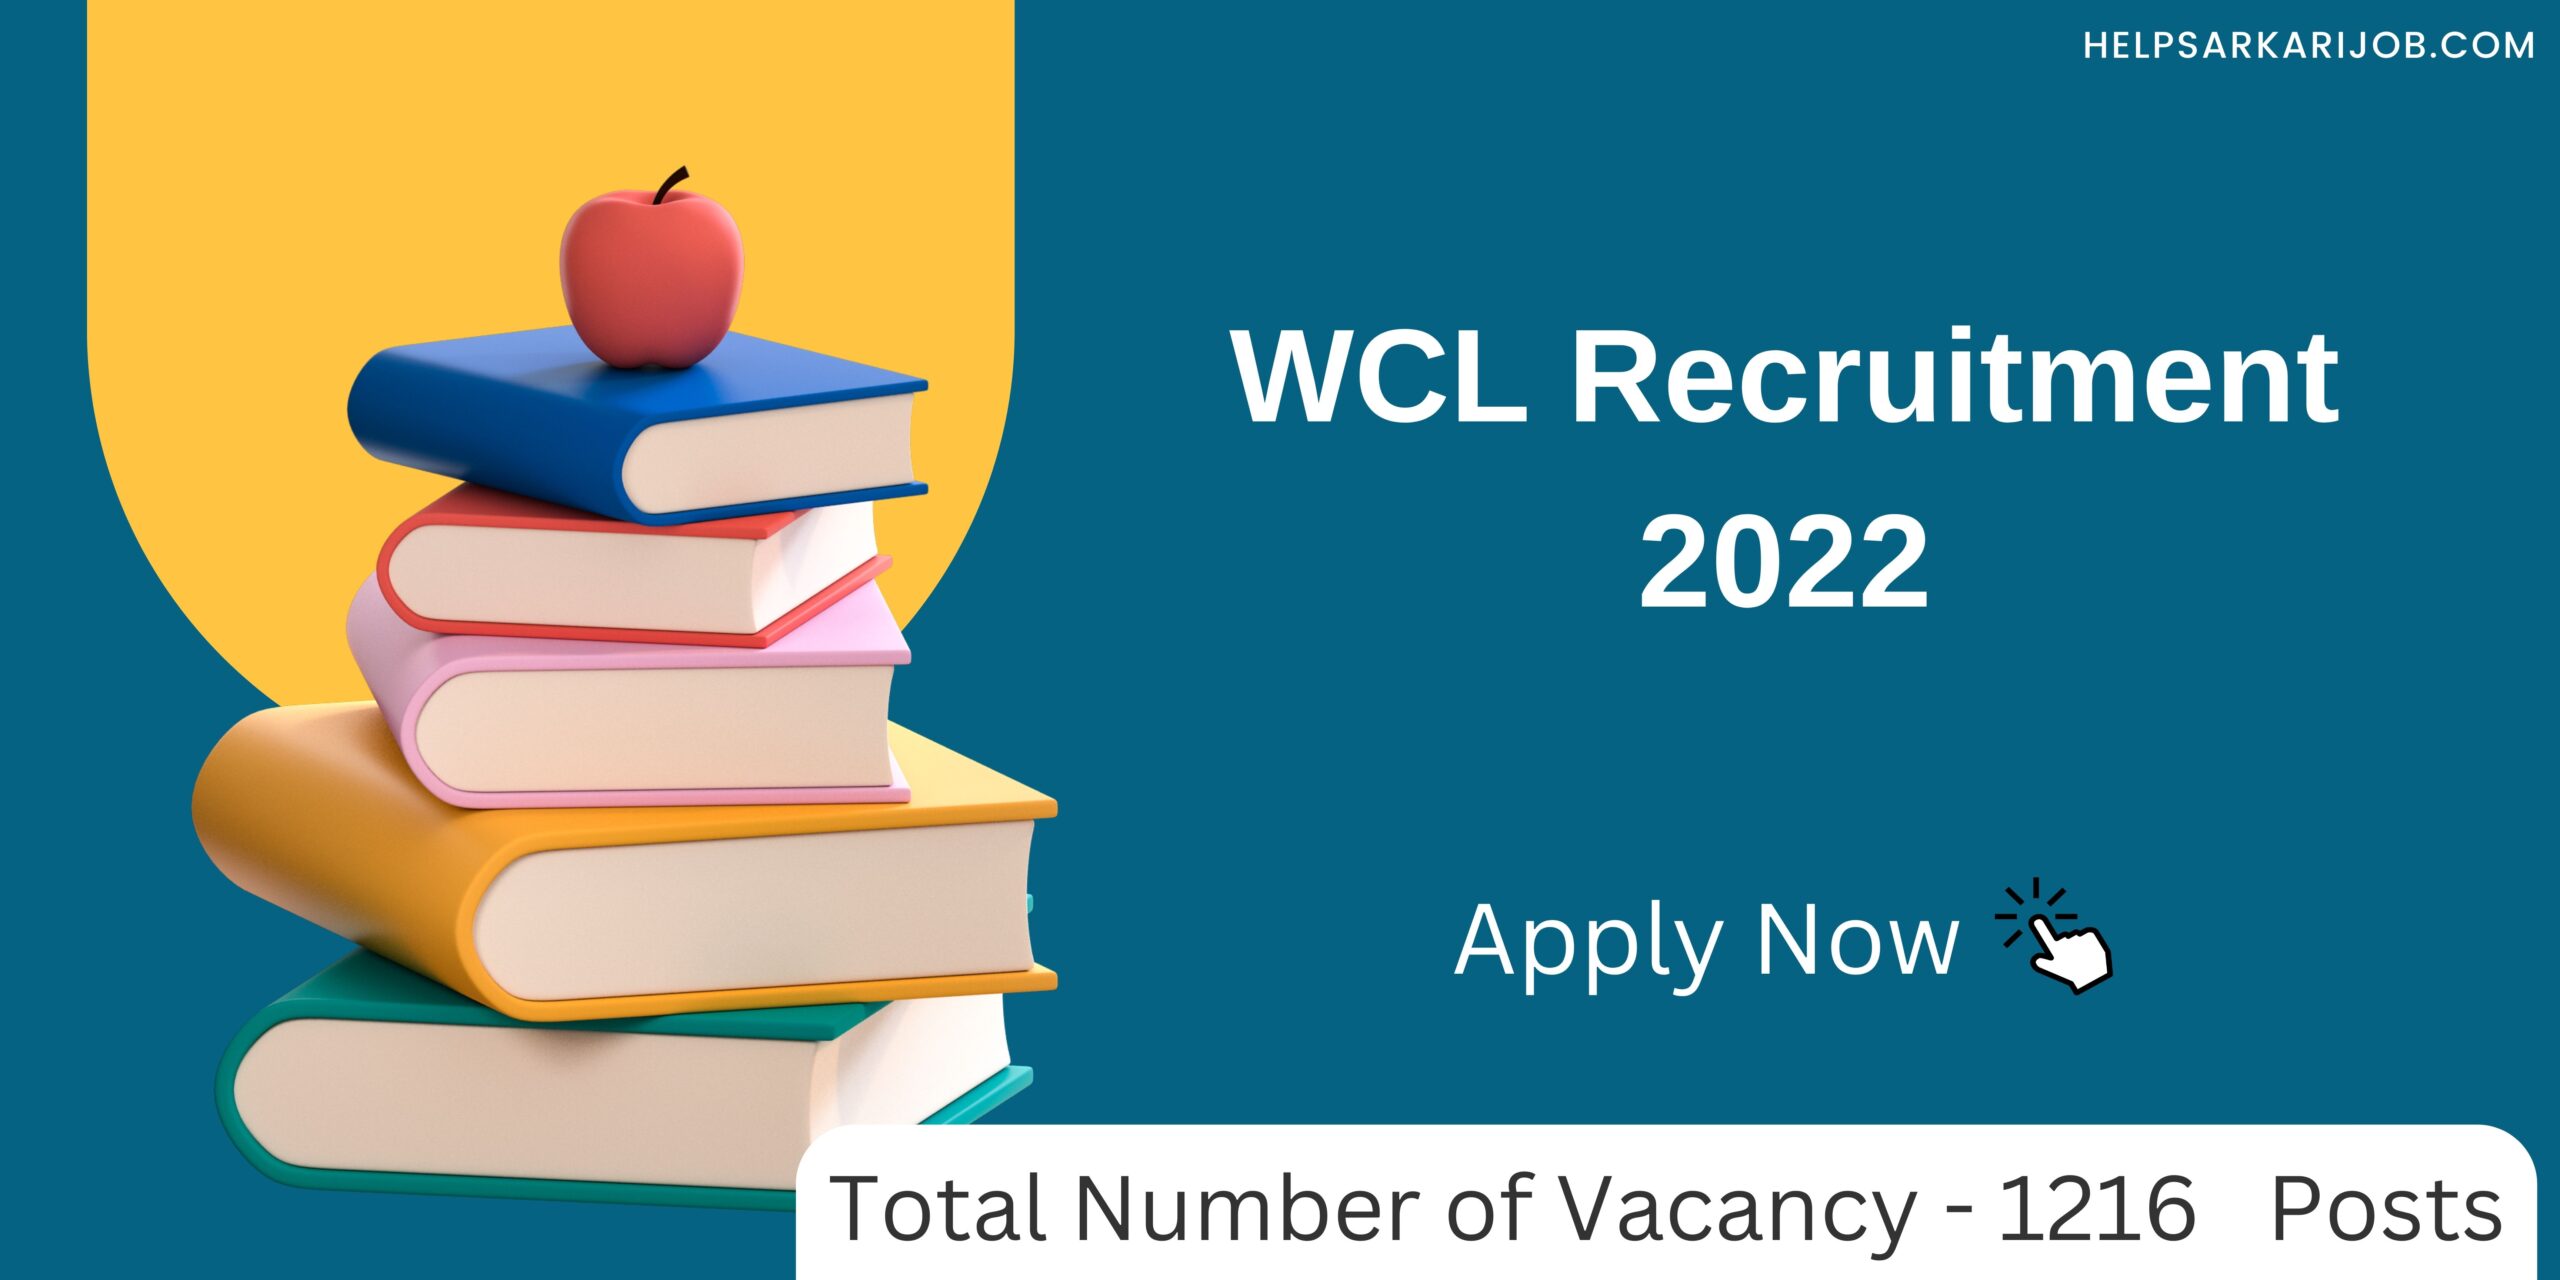 WCL Recruitment 2022